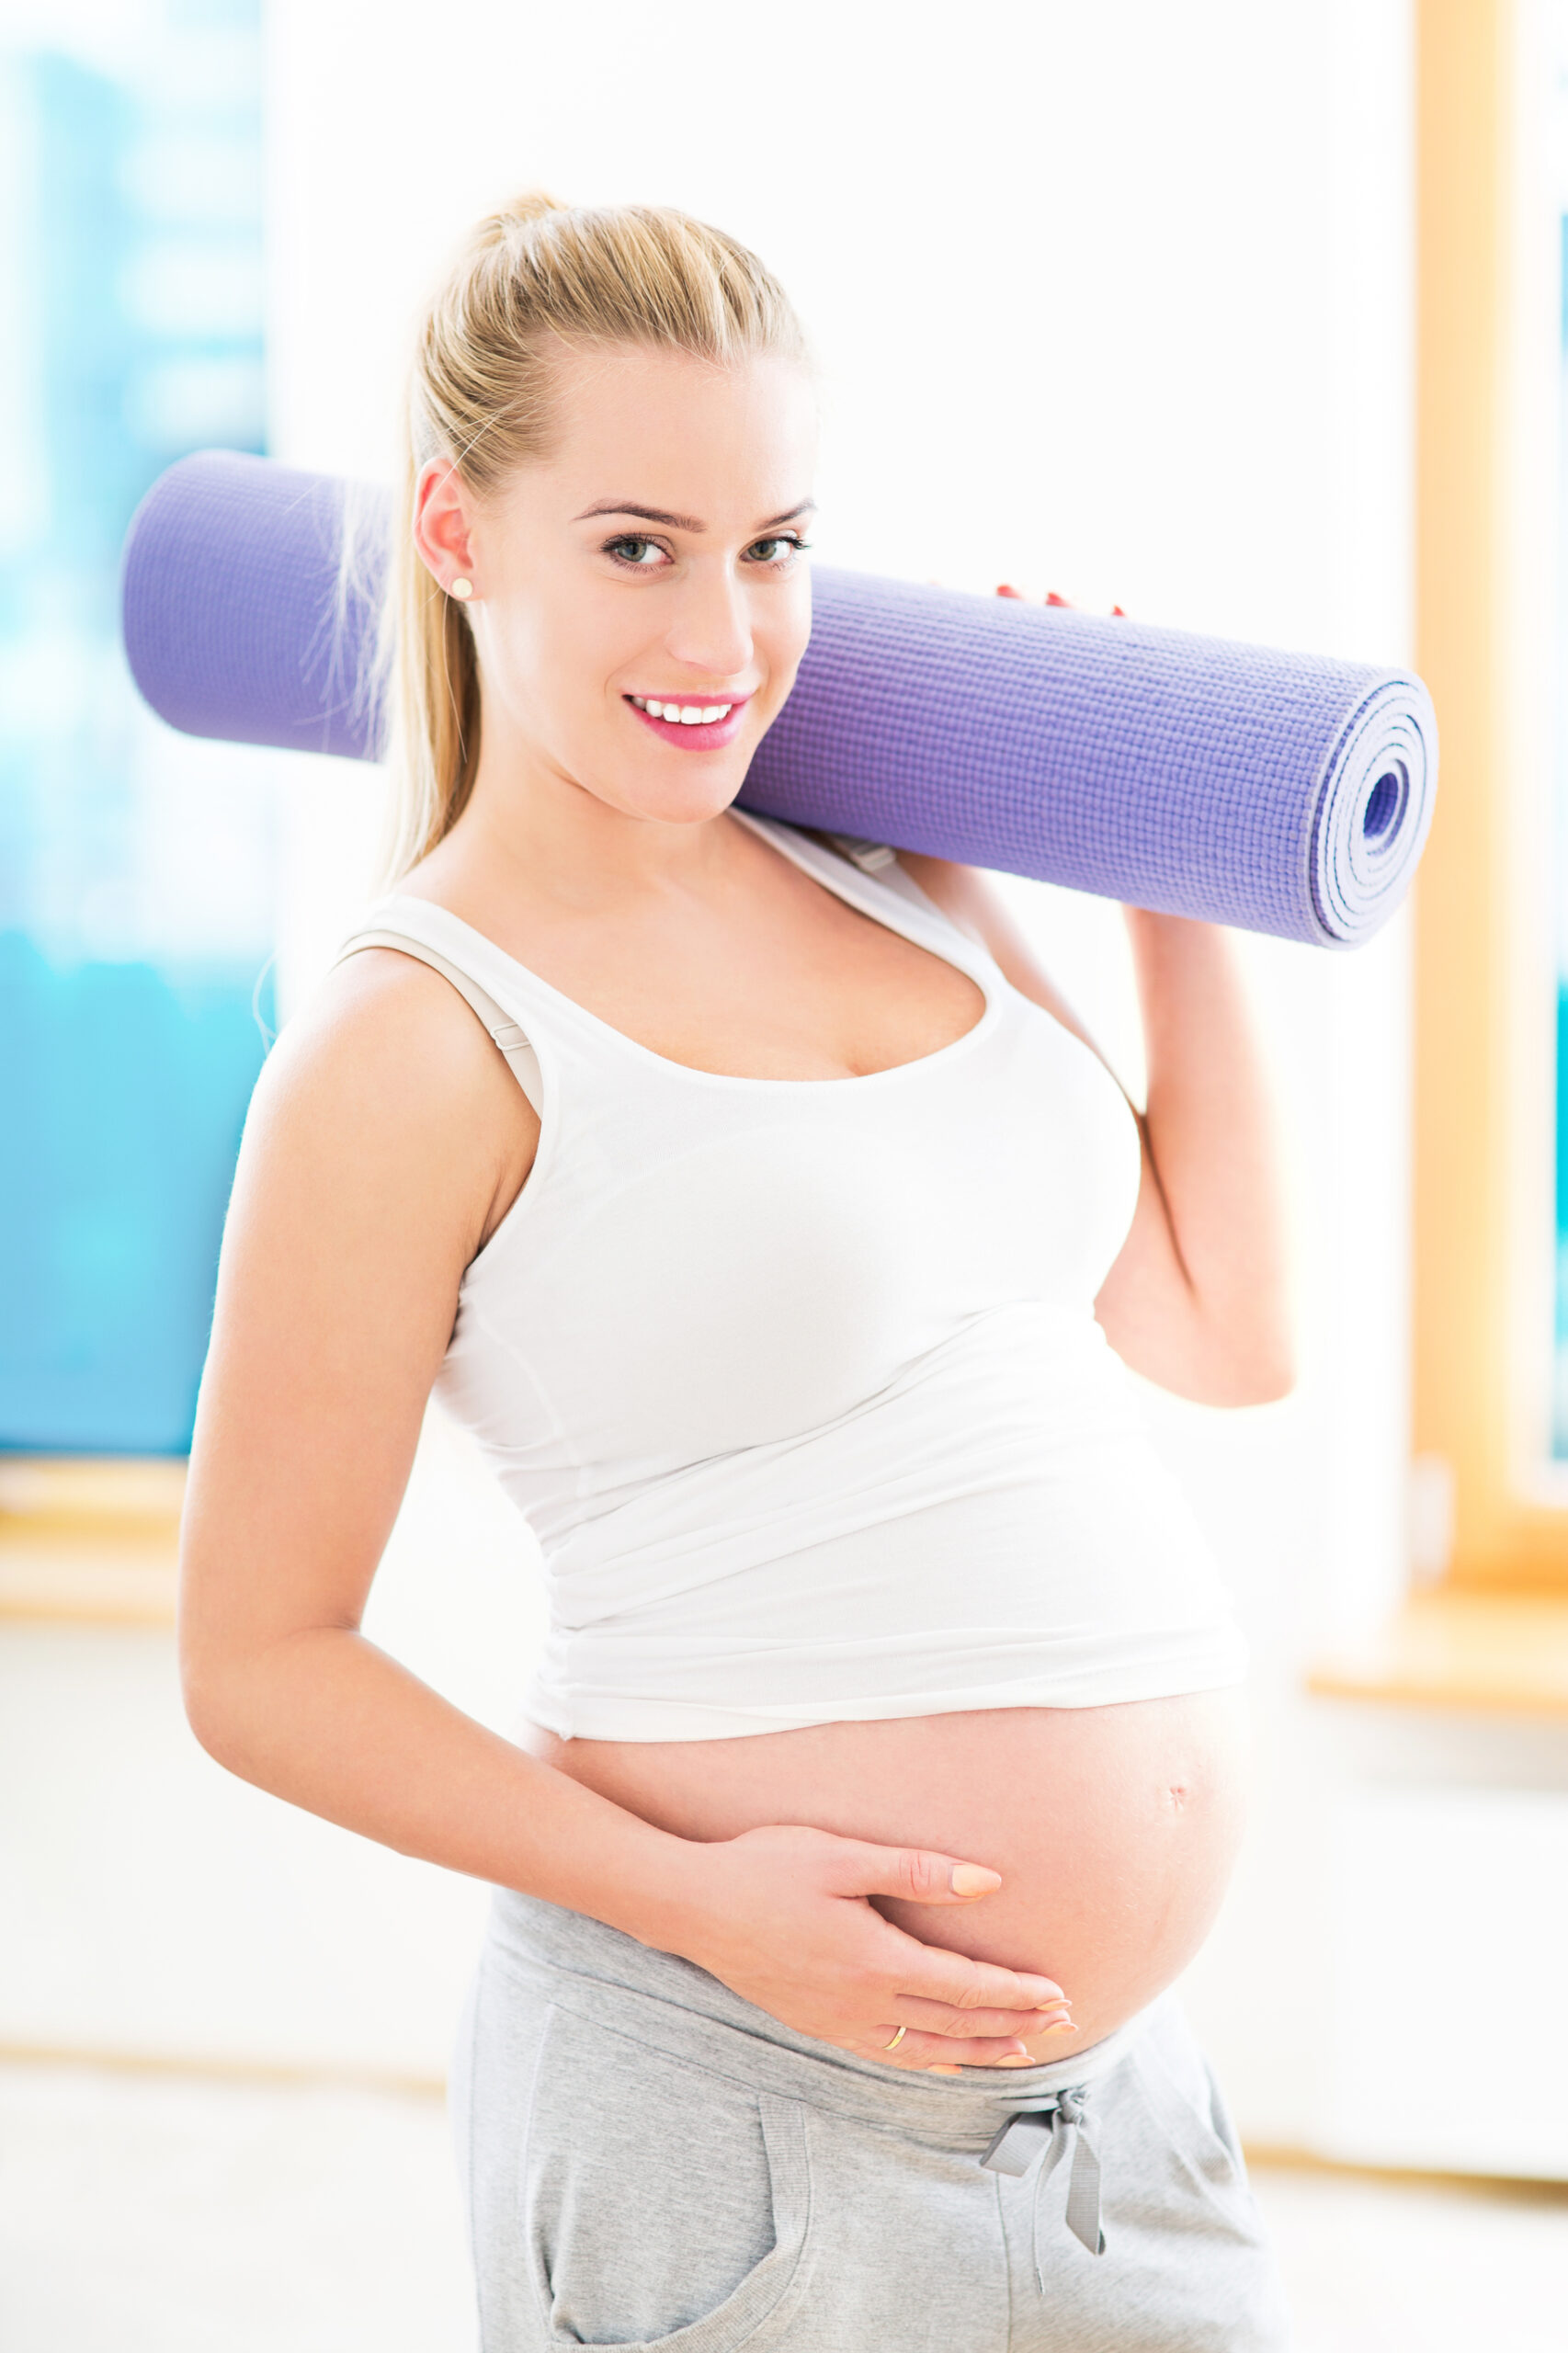 Pregnancy Exercise